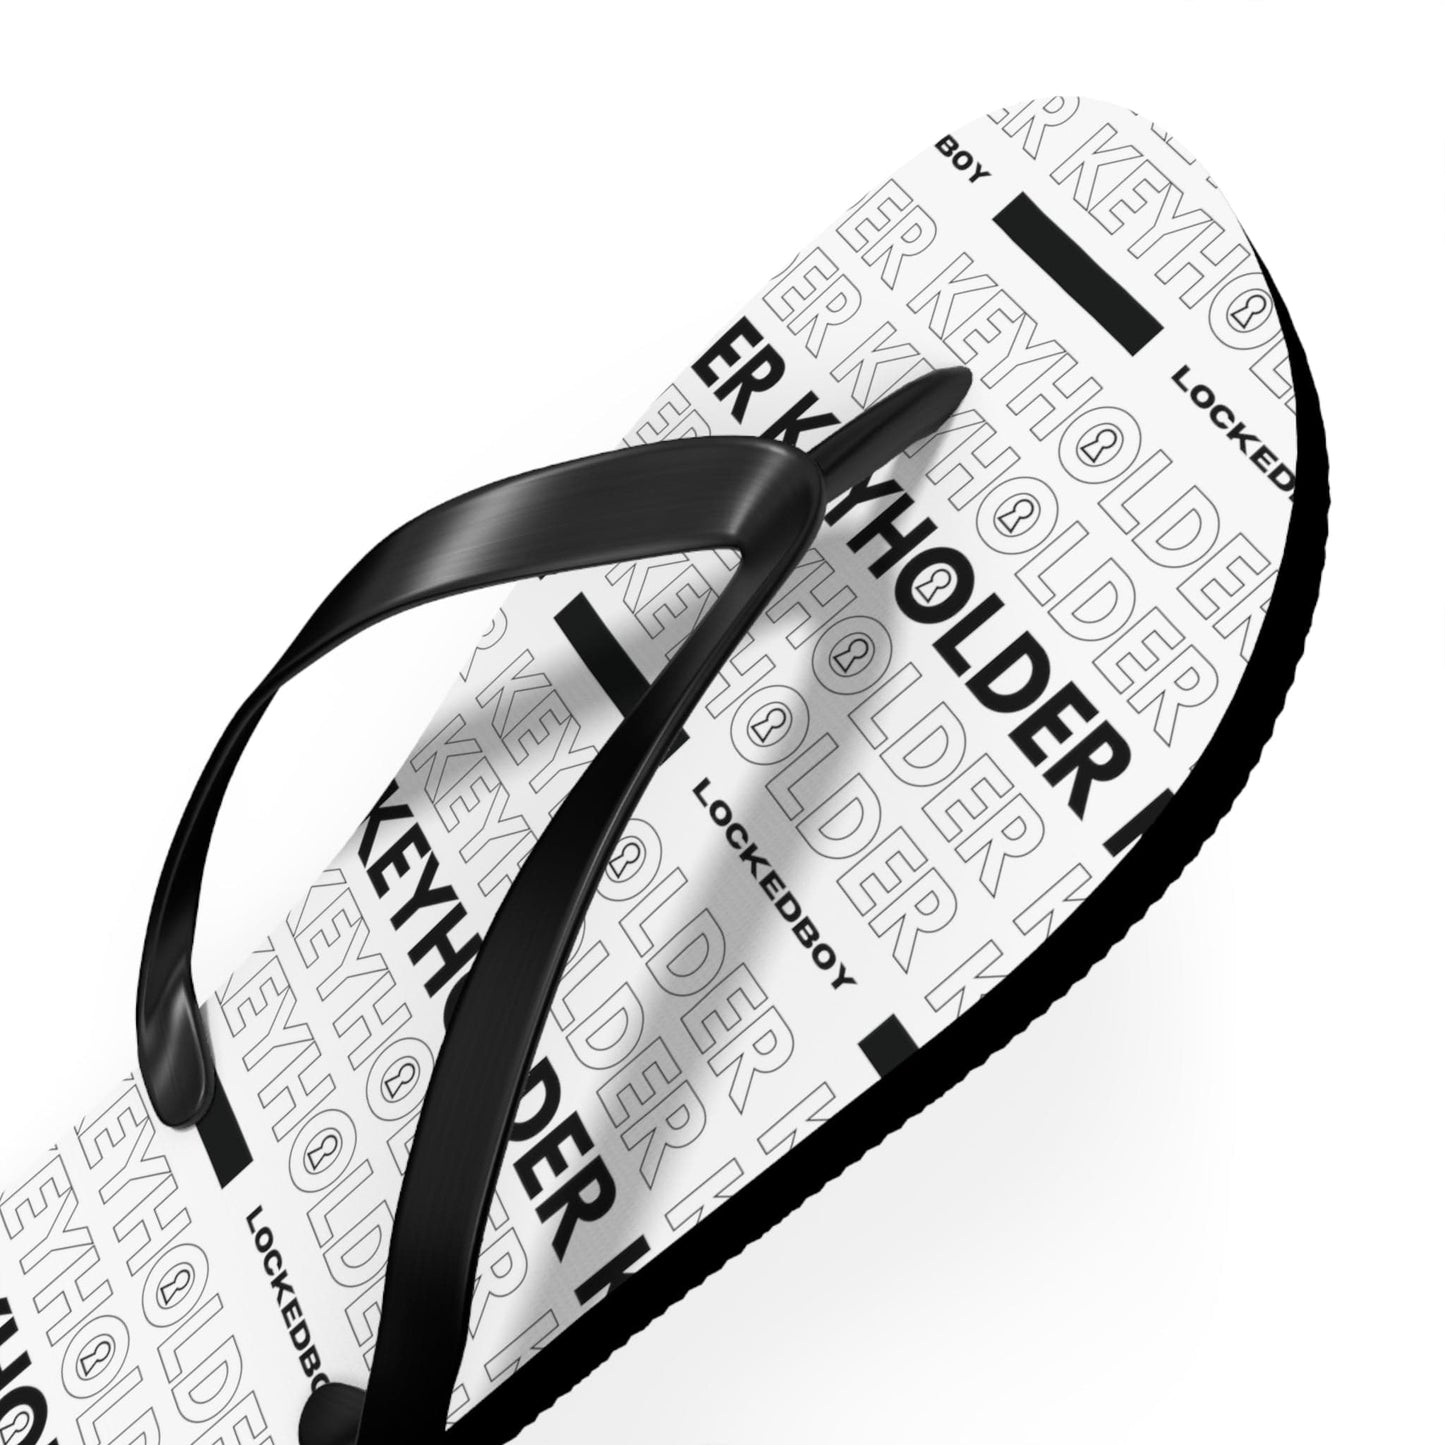 Shoes KeyHolder Bag Inspo Unisex Flip-Flops LEATHERDADDY BATOR